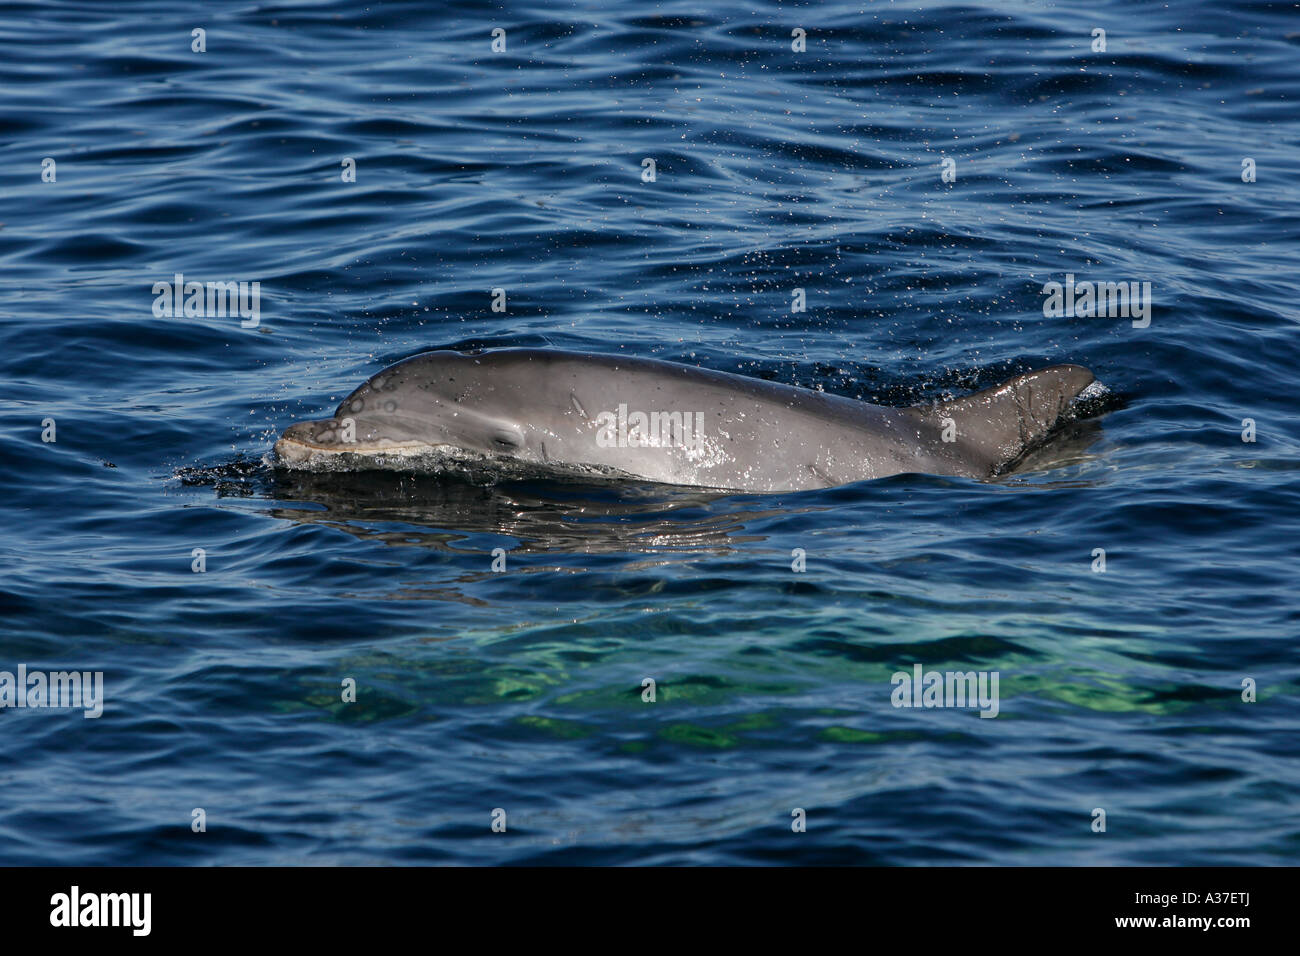 Un delfín de botella salvaje Tursiops truncatus pantorrilla surfacing para respirar al lado de un barco de investigación, Moray Firth, Highlands of Scotland Foto de stock